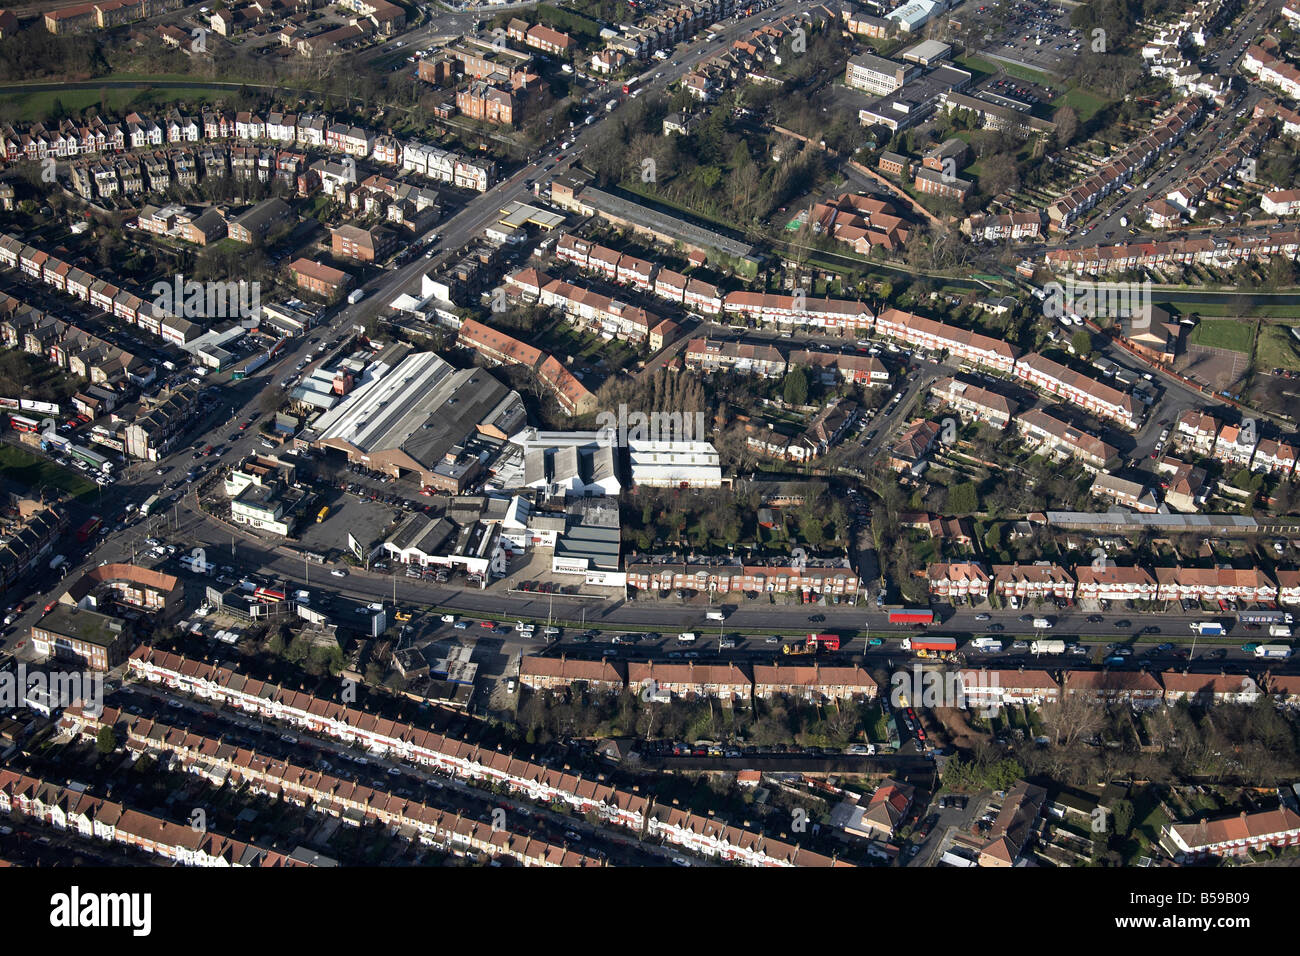 Vue aérienne au nord-ouest de Green Lanes North Circular Road maisons de banlieue Ave Industrial Estate Pymme s Brook London N13 UK Banque D'Images